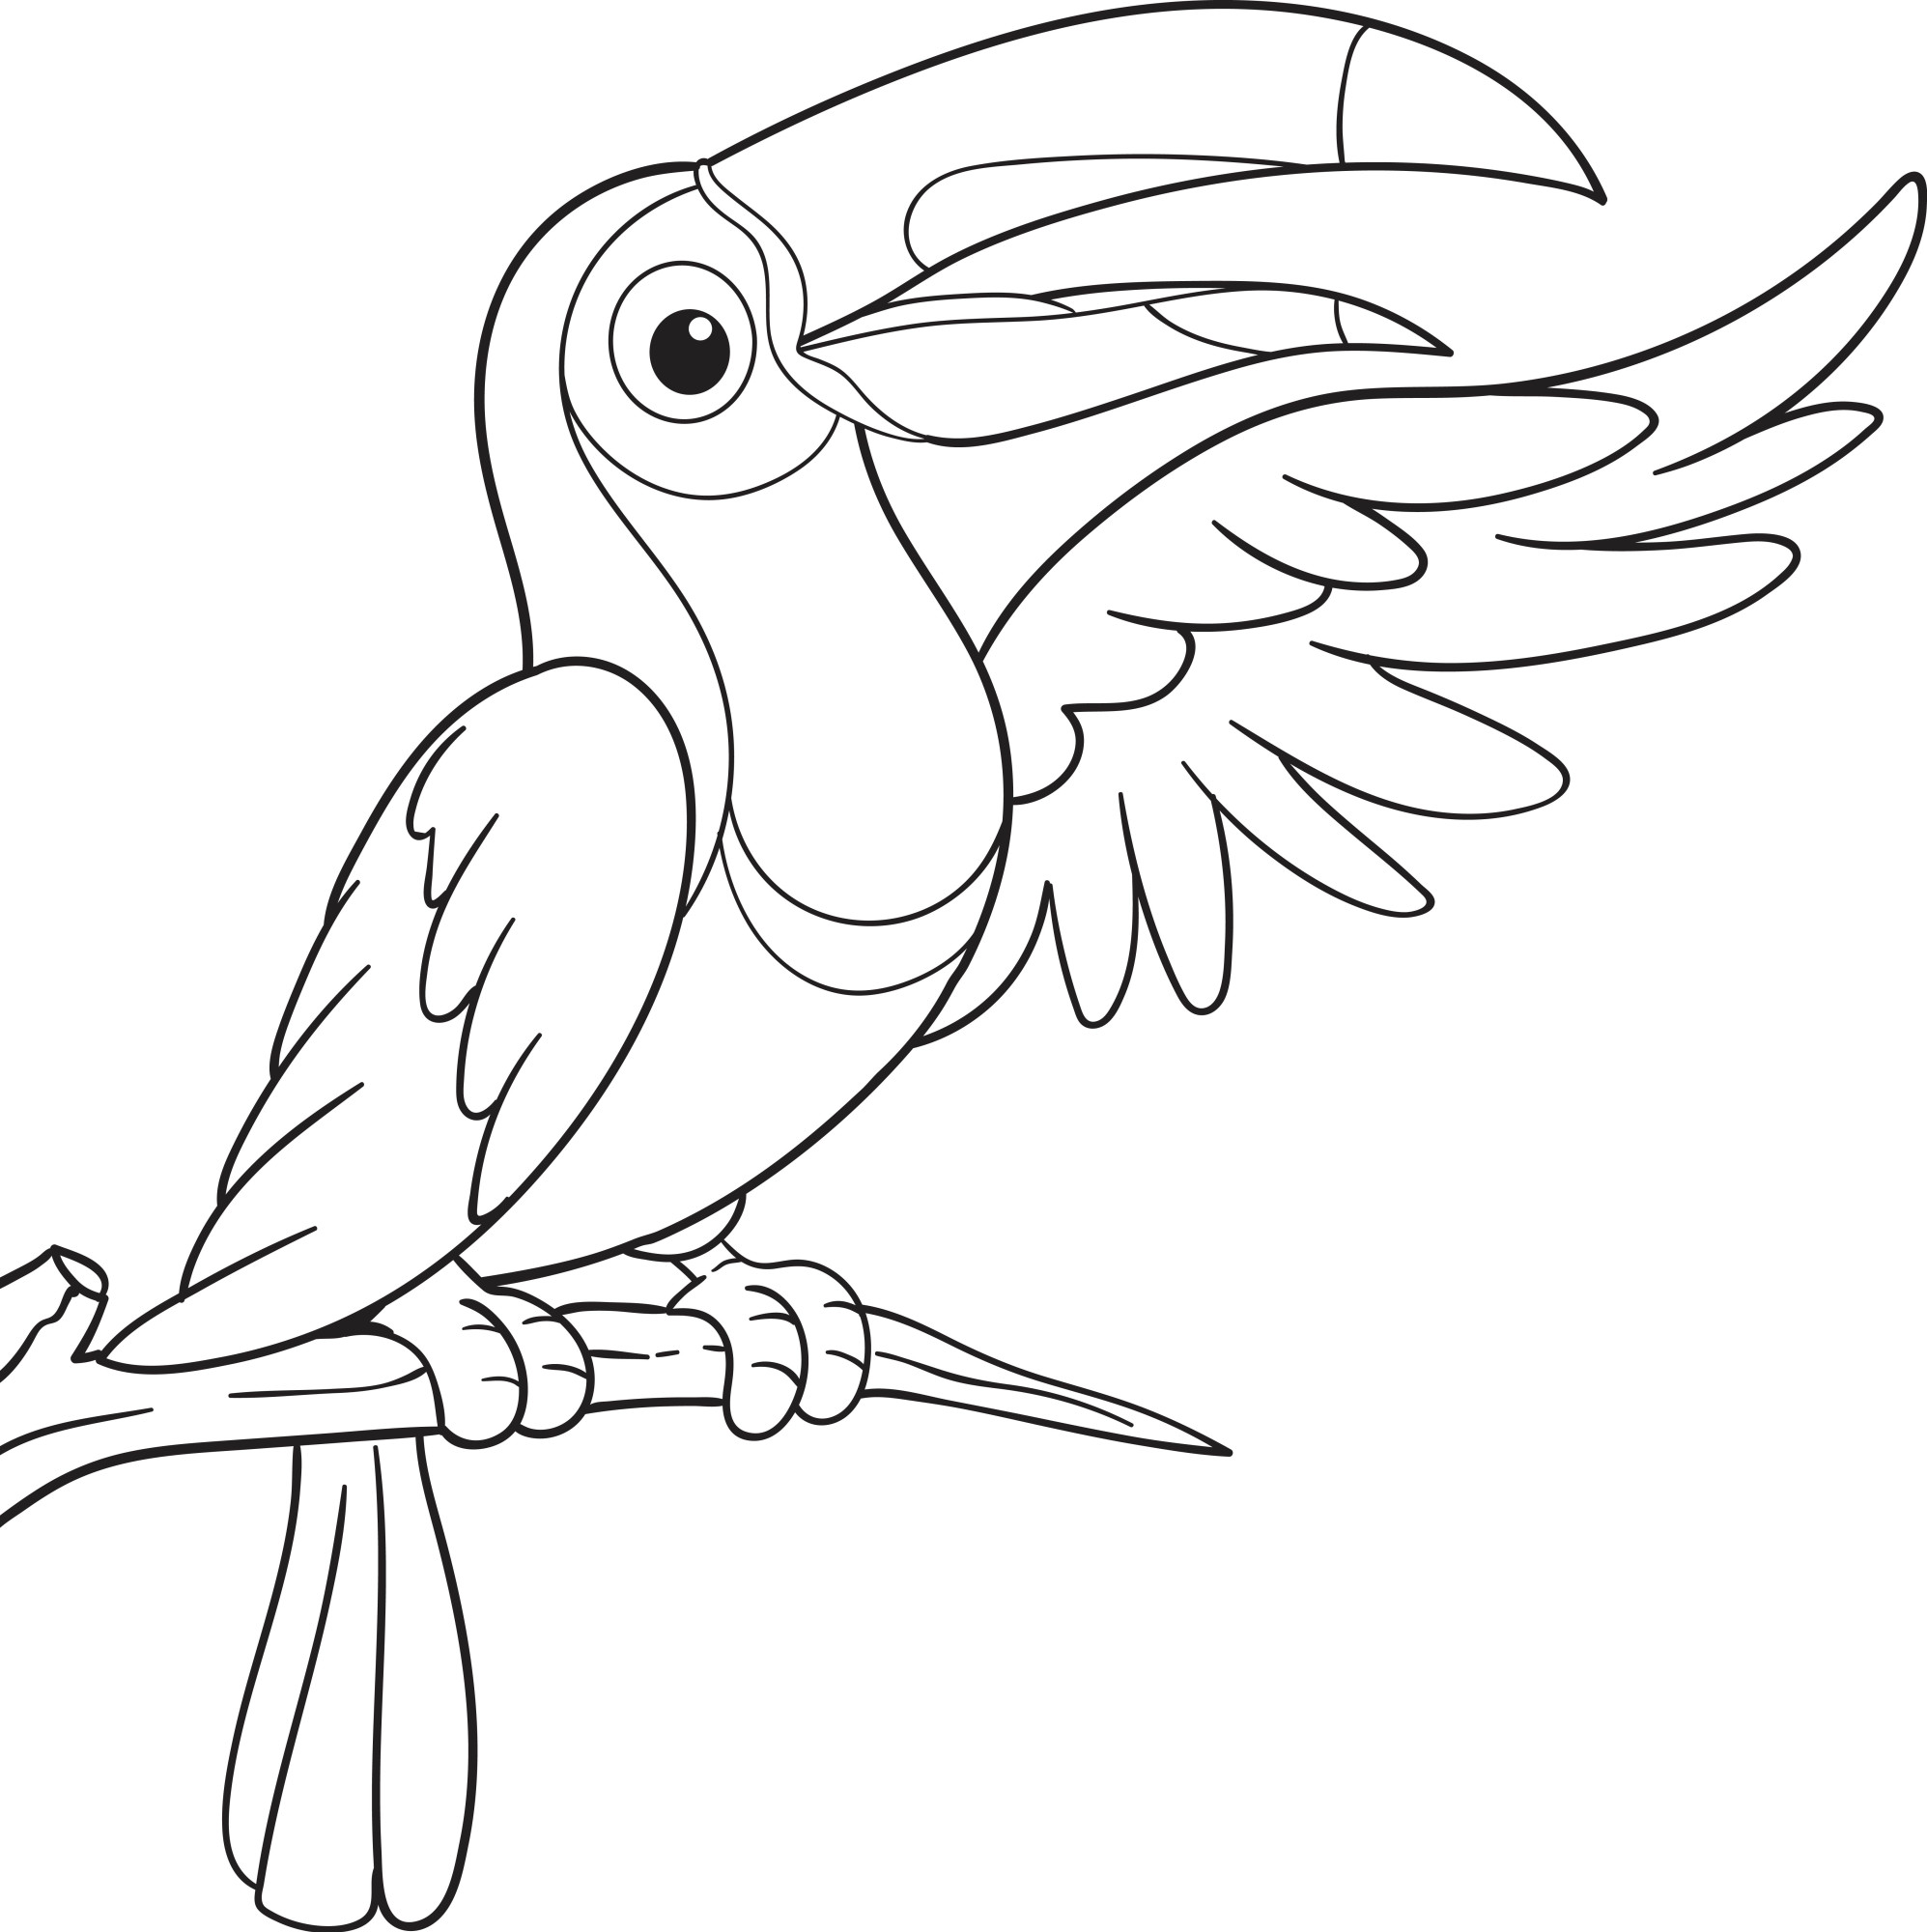 Раскраска для детей: тукан птица с большим клювом